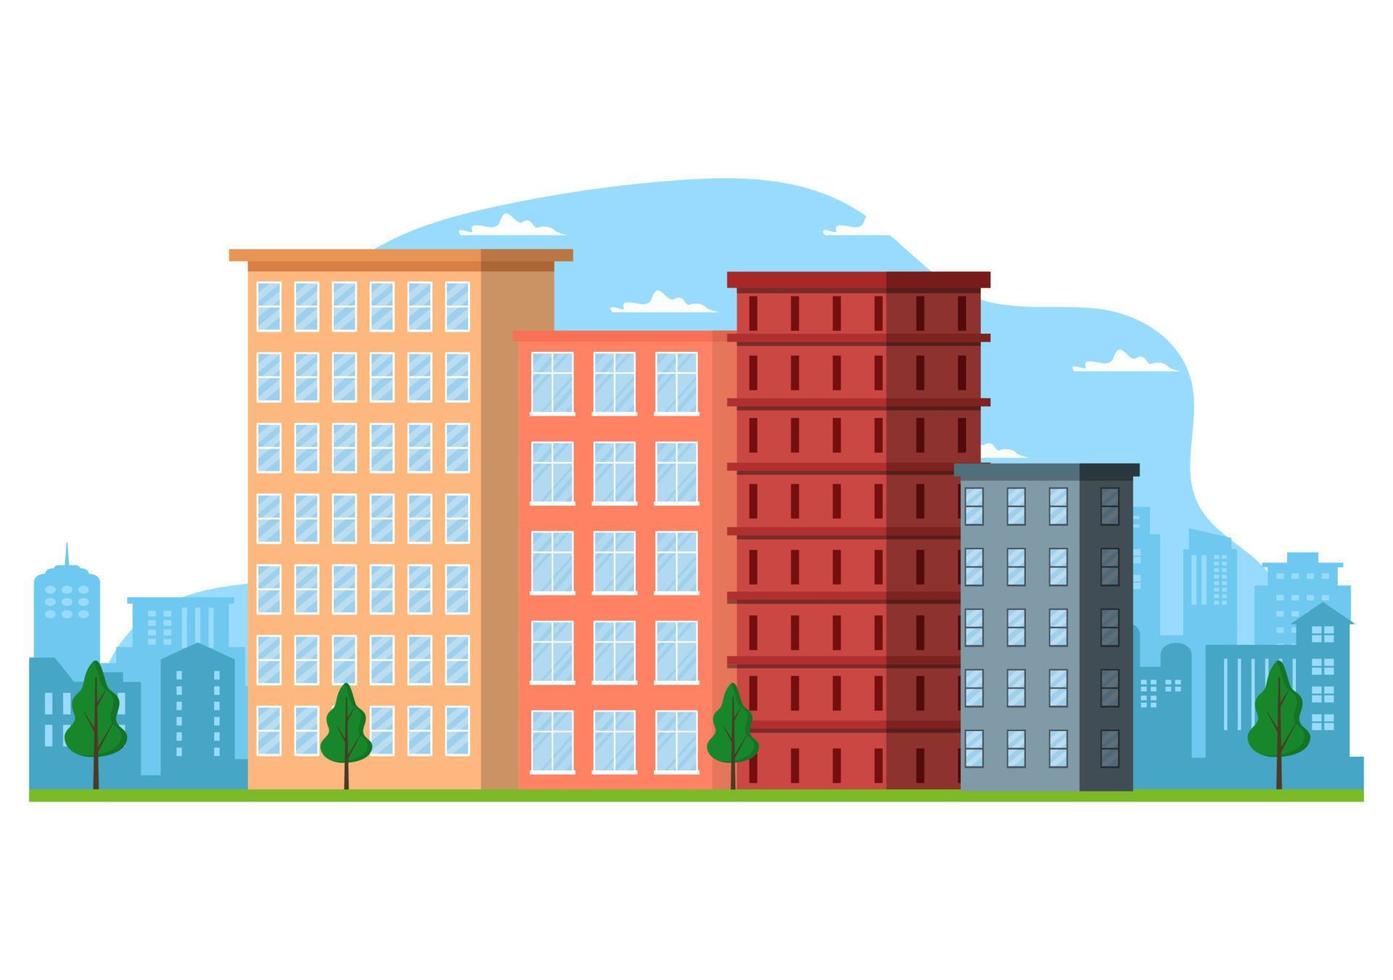 paysage urbain moderne bâtiments et architecture immobilier silhouette vecteur arrière-plan illustration en ligne style plat géométrique simple